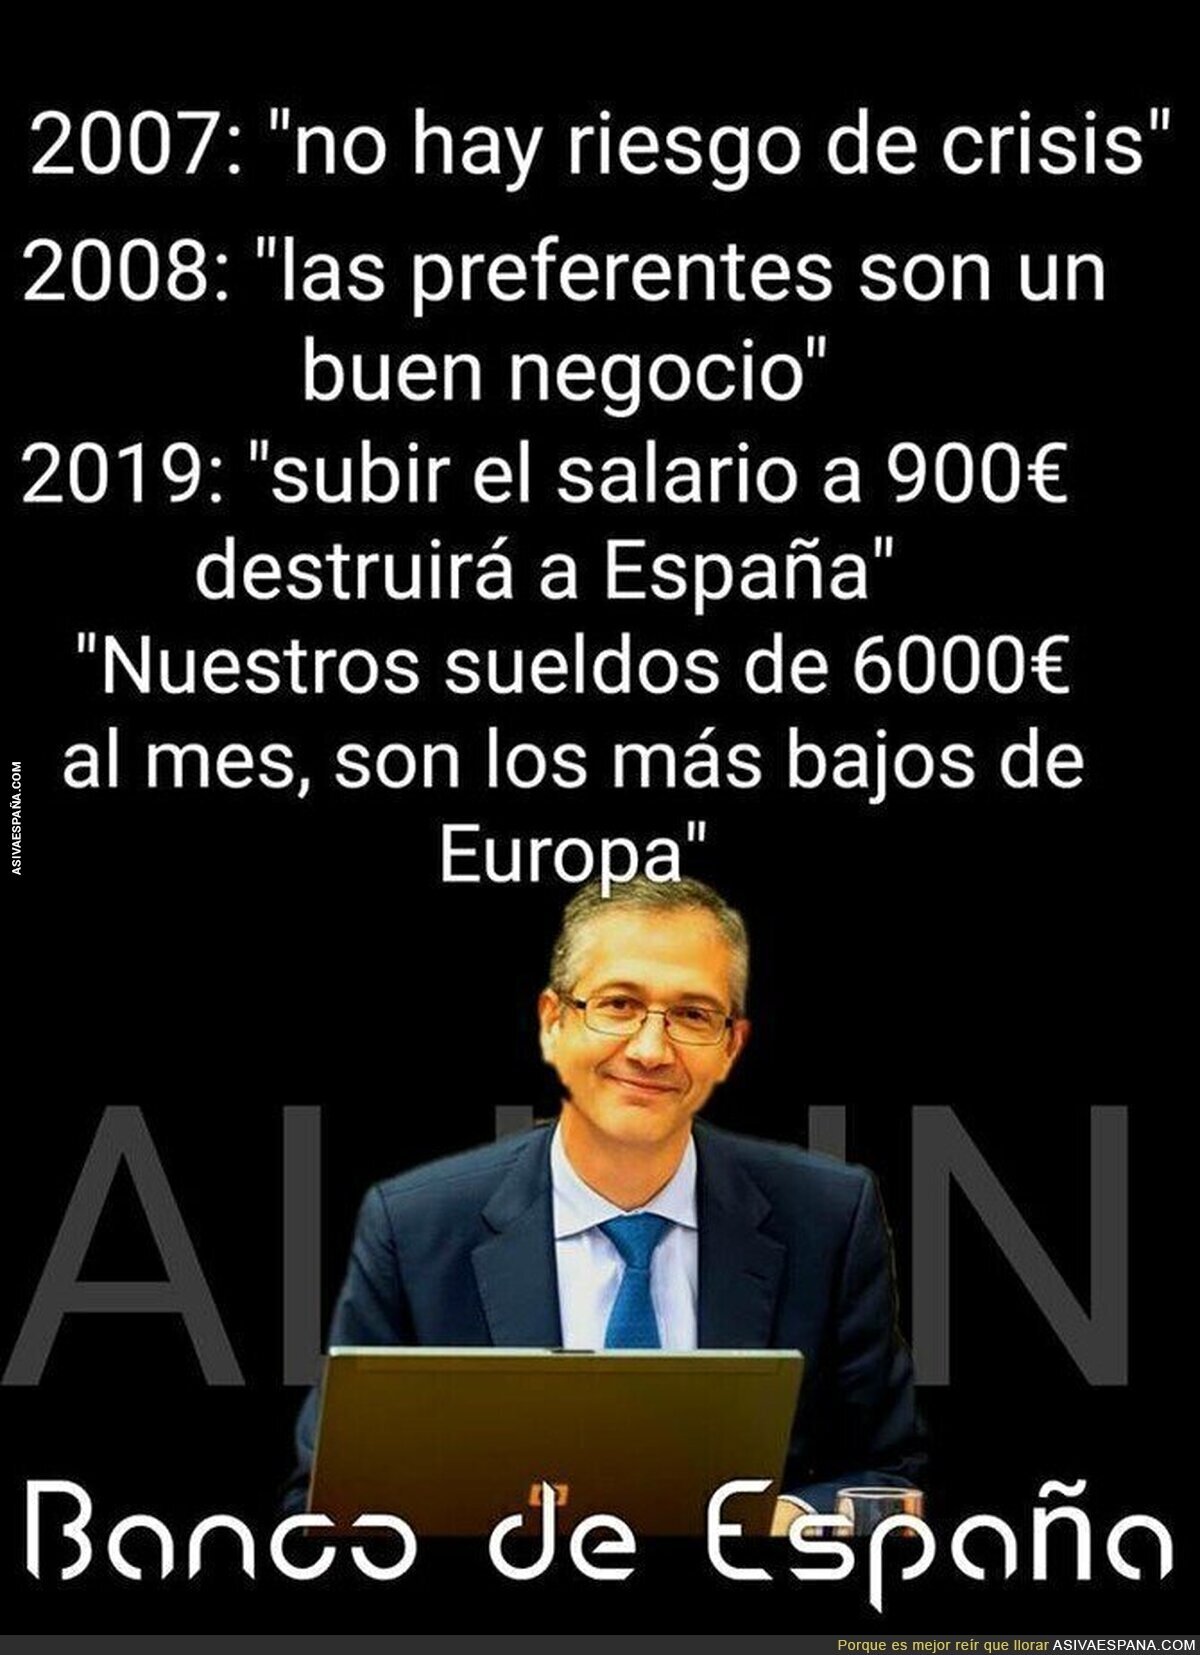 Los del Banco de España son unos cachondos